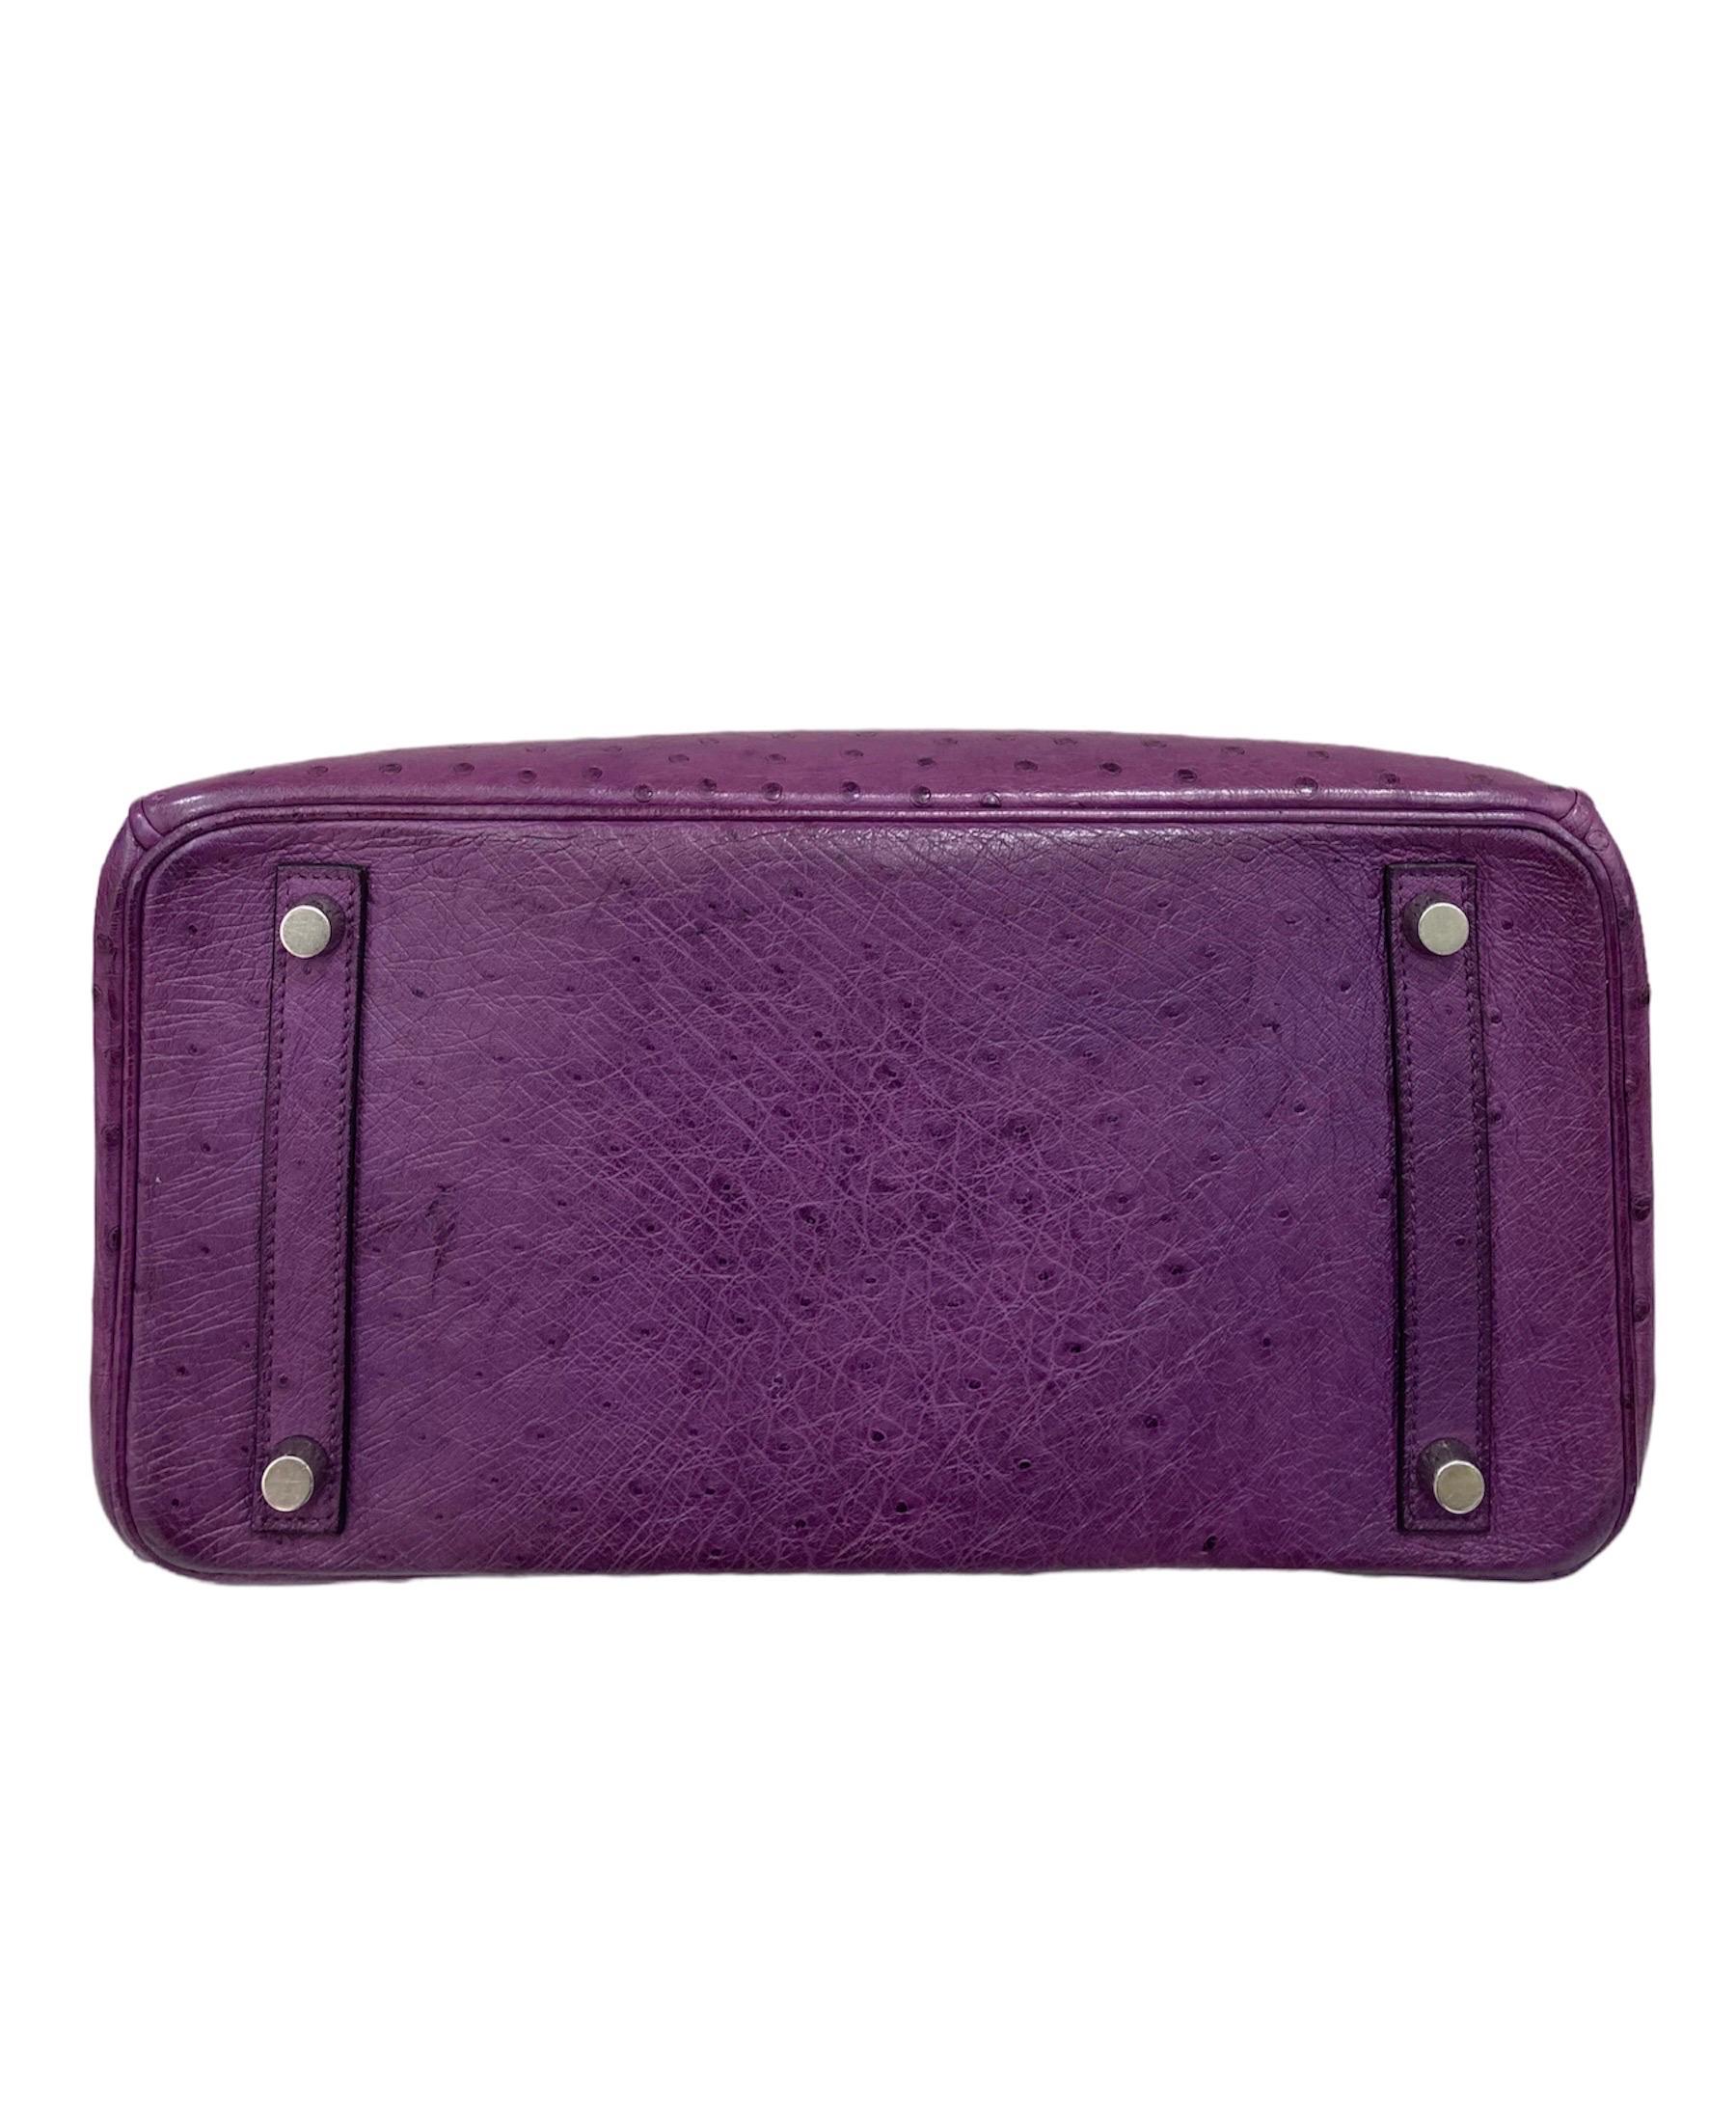 Gray Hermes Birkin 30 Violet Ostrich Top Handle Bag For Sale